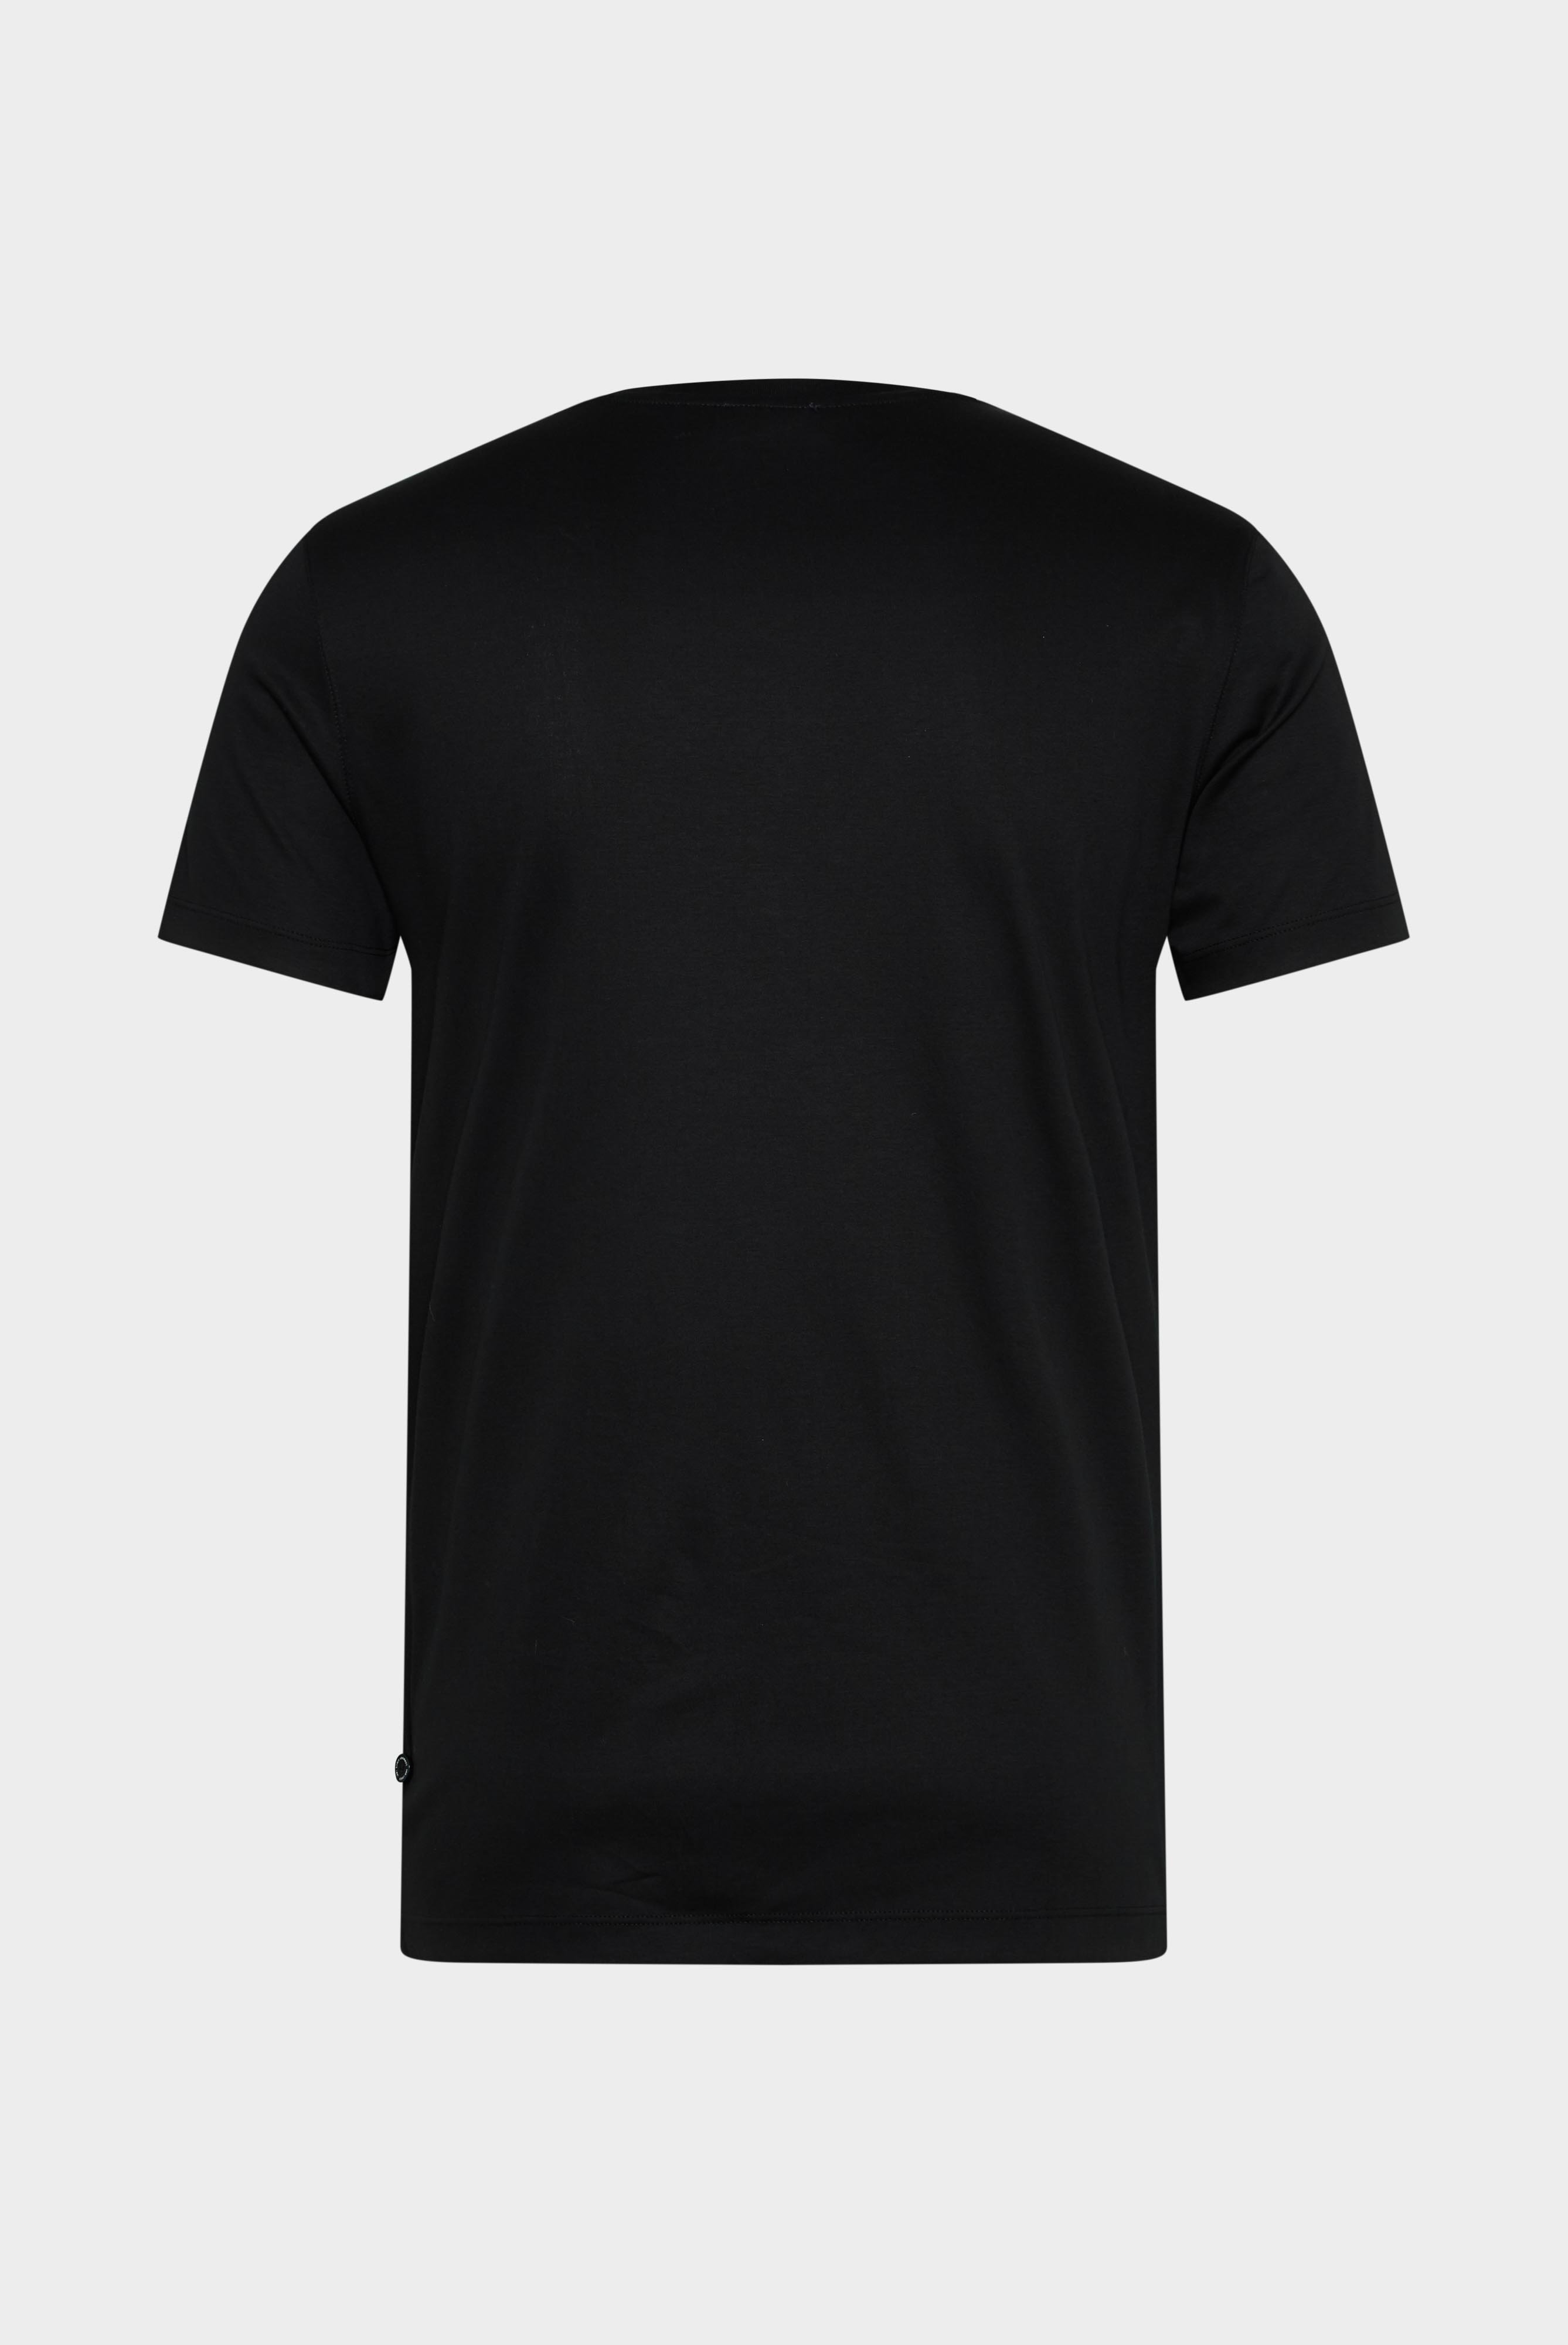 T-Shirts+V-Ausschnitt Jersey T-Shirt Slim Fit+20.1715.UX.180031.099.L